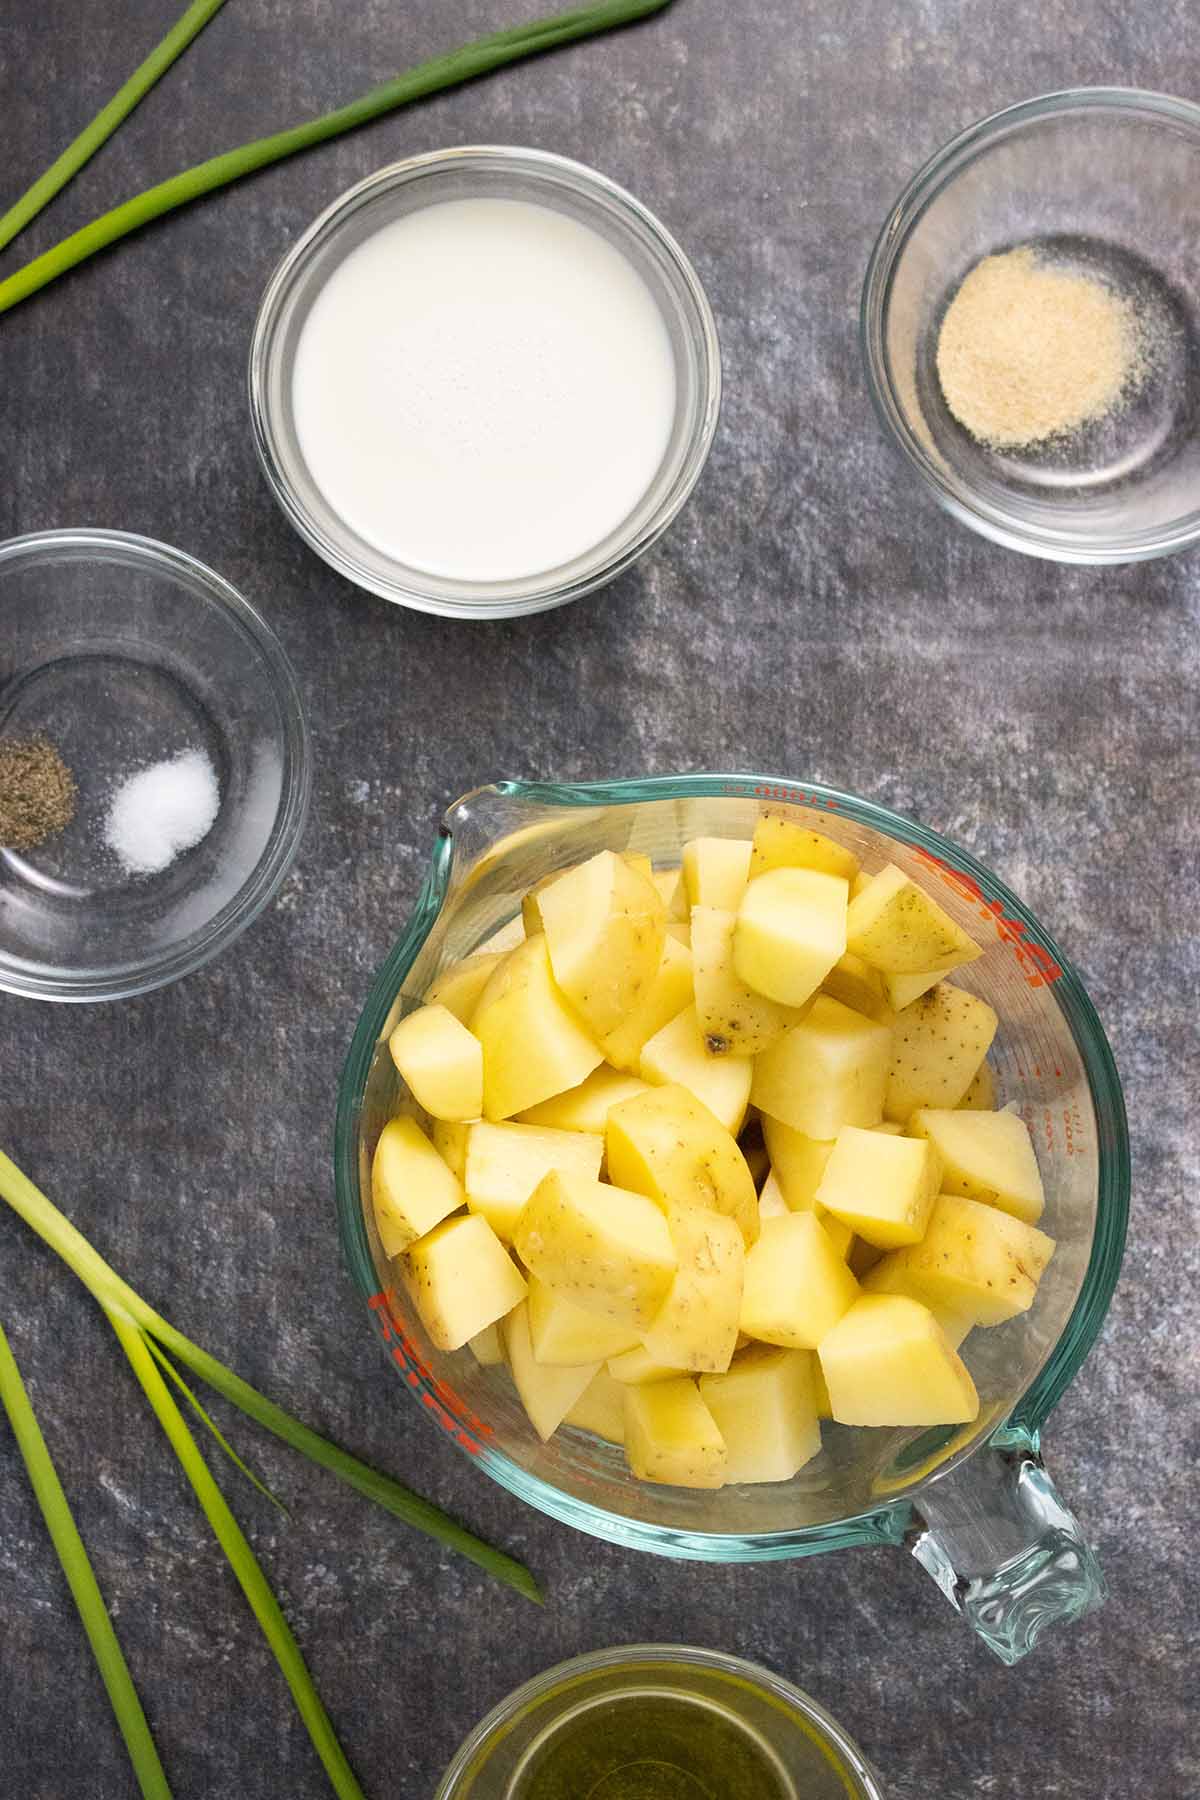 vegan mashed potatoes ingredients